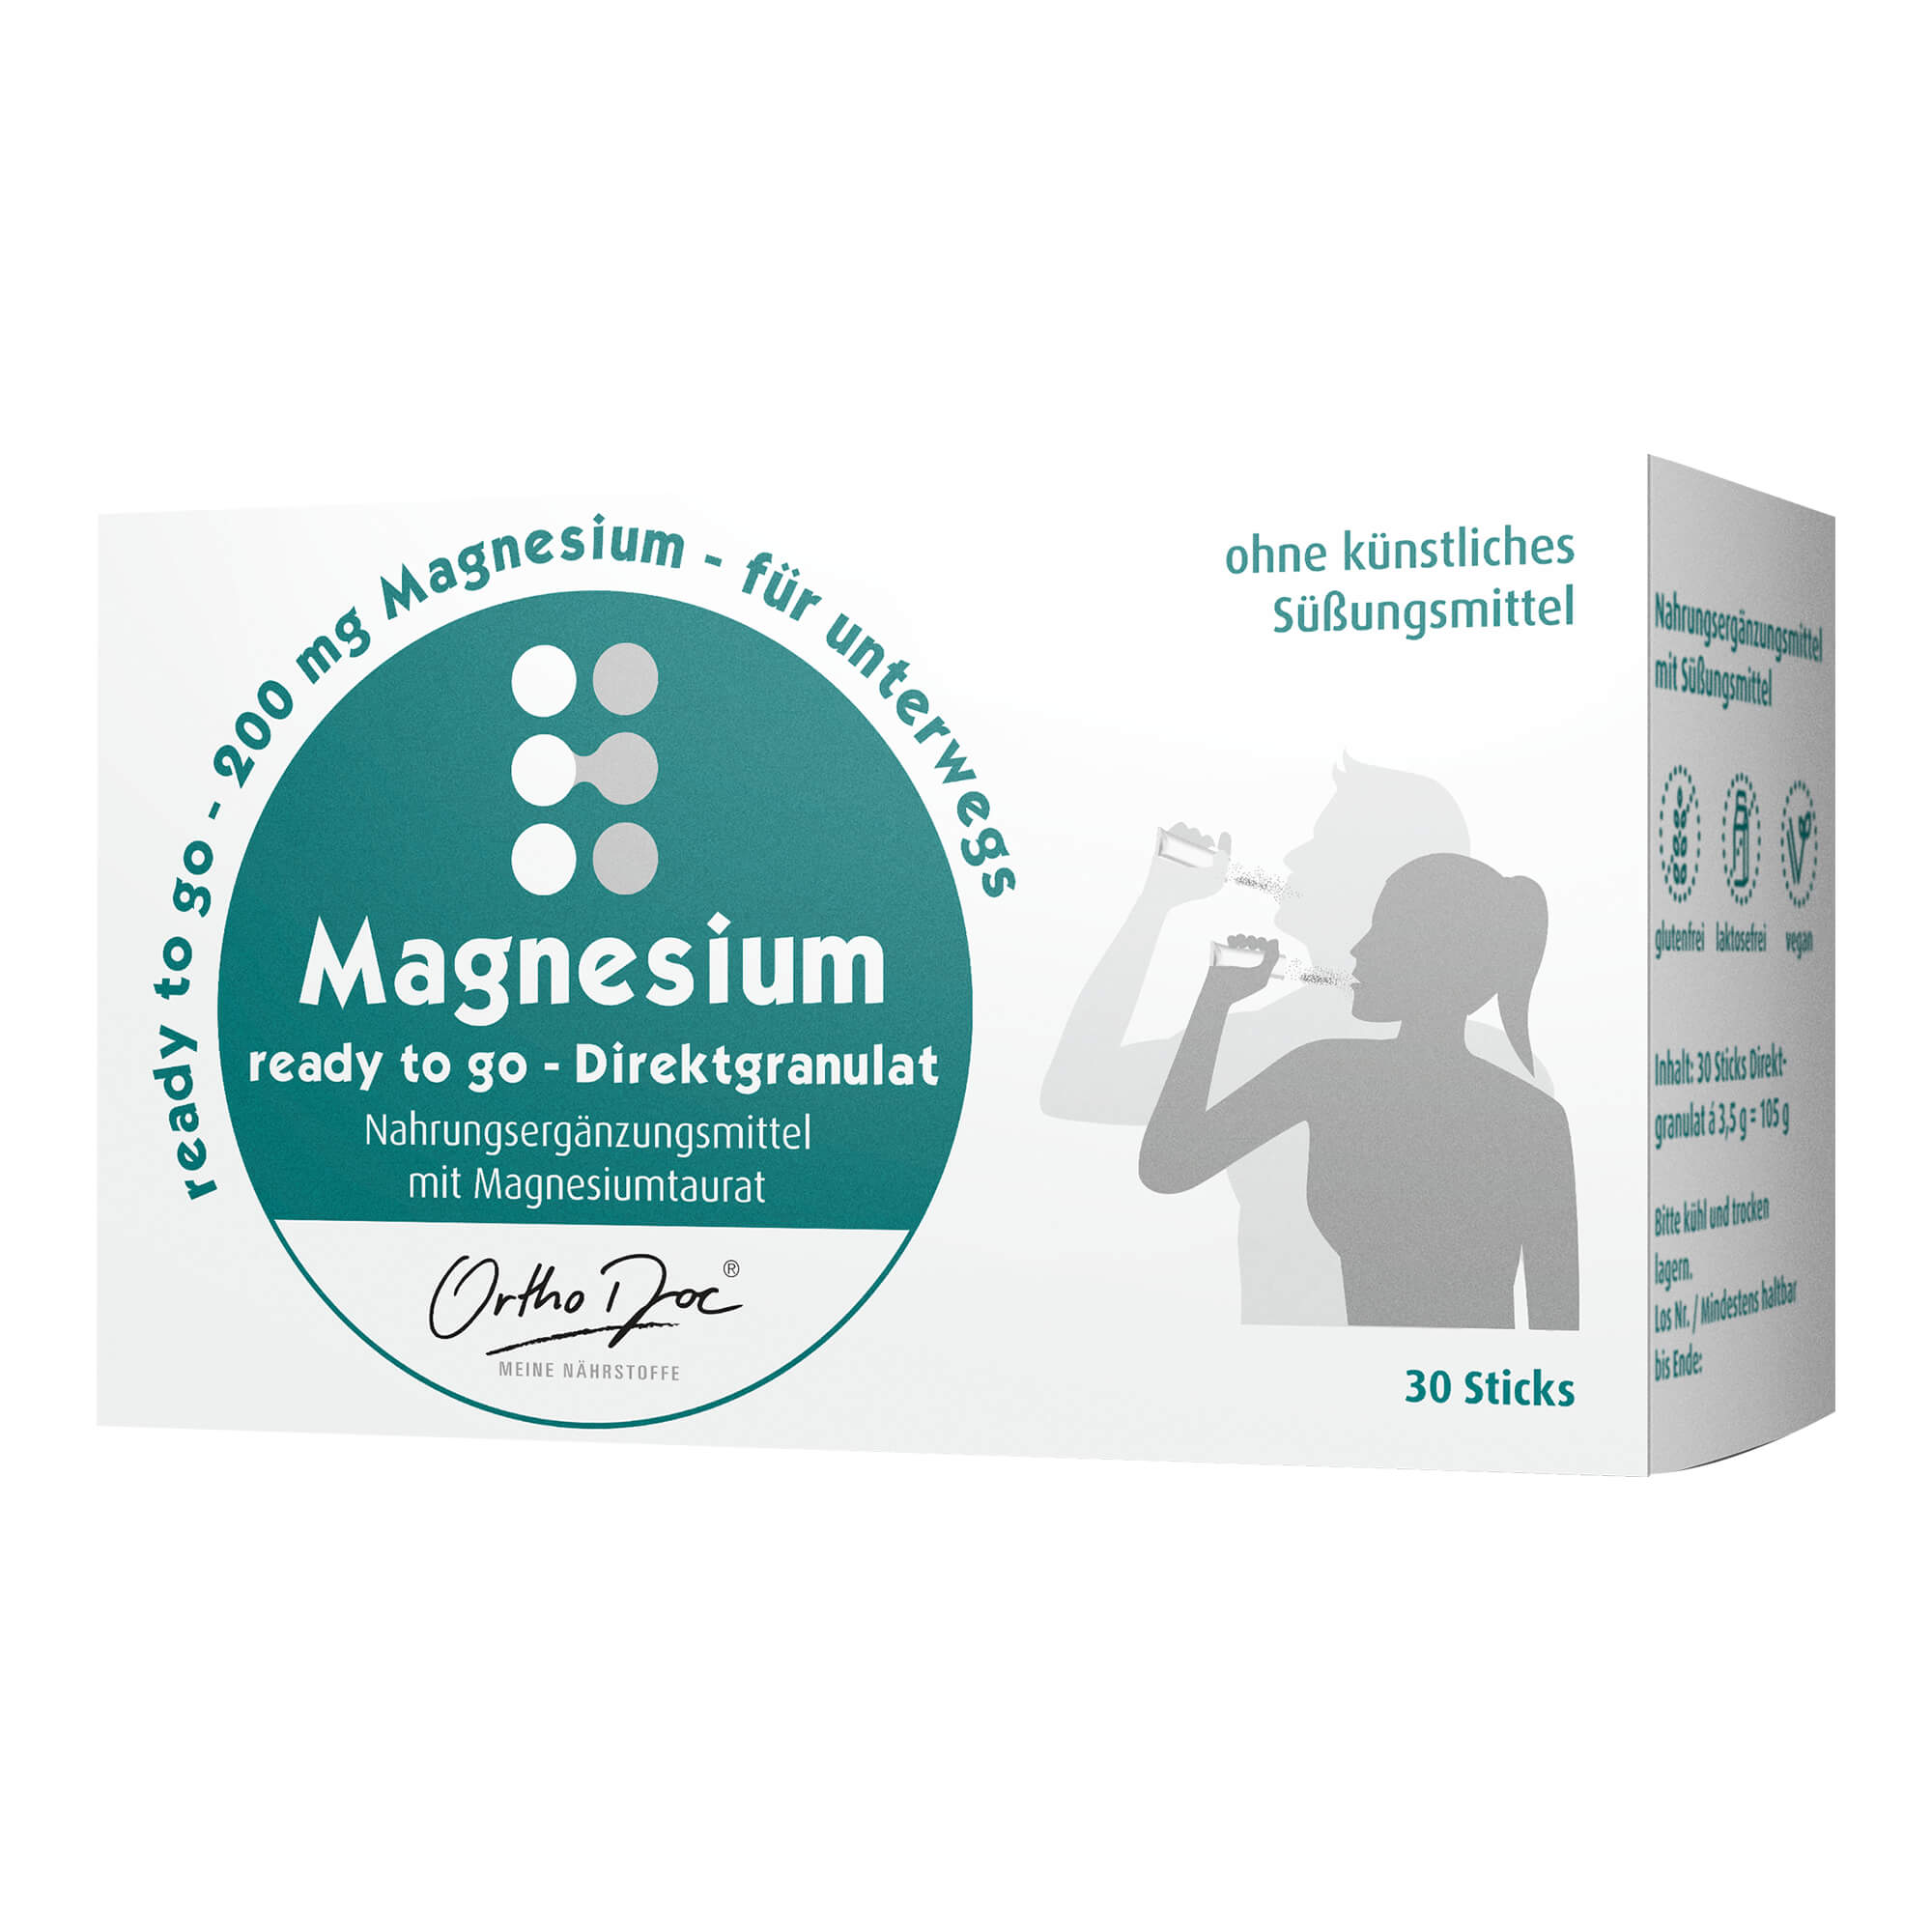 Nahrungsergänzungsmittel mit Magnesiumtaurat. Ideal für unterwegs, in der Arbeit oder direkt nach dem Sport.